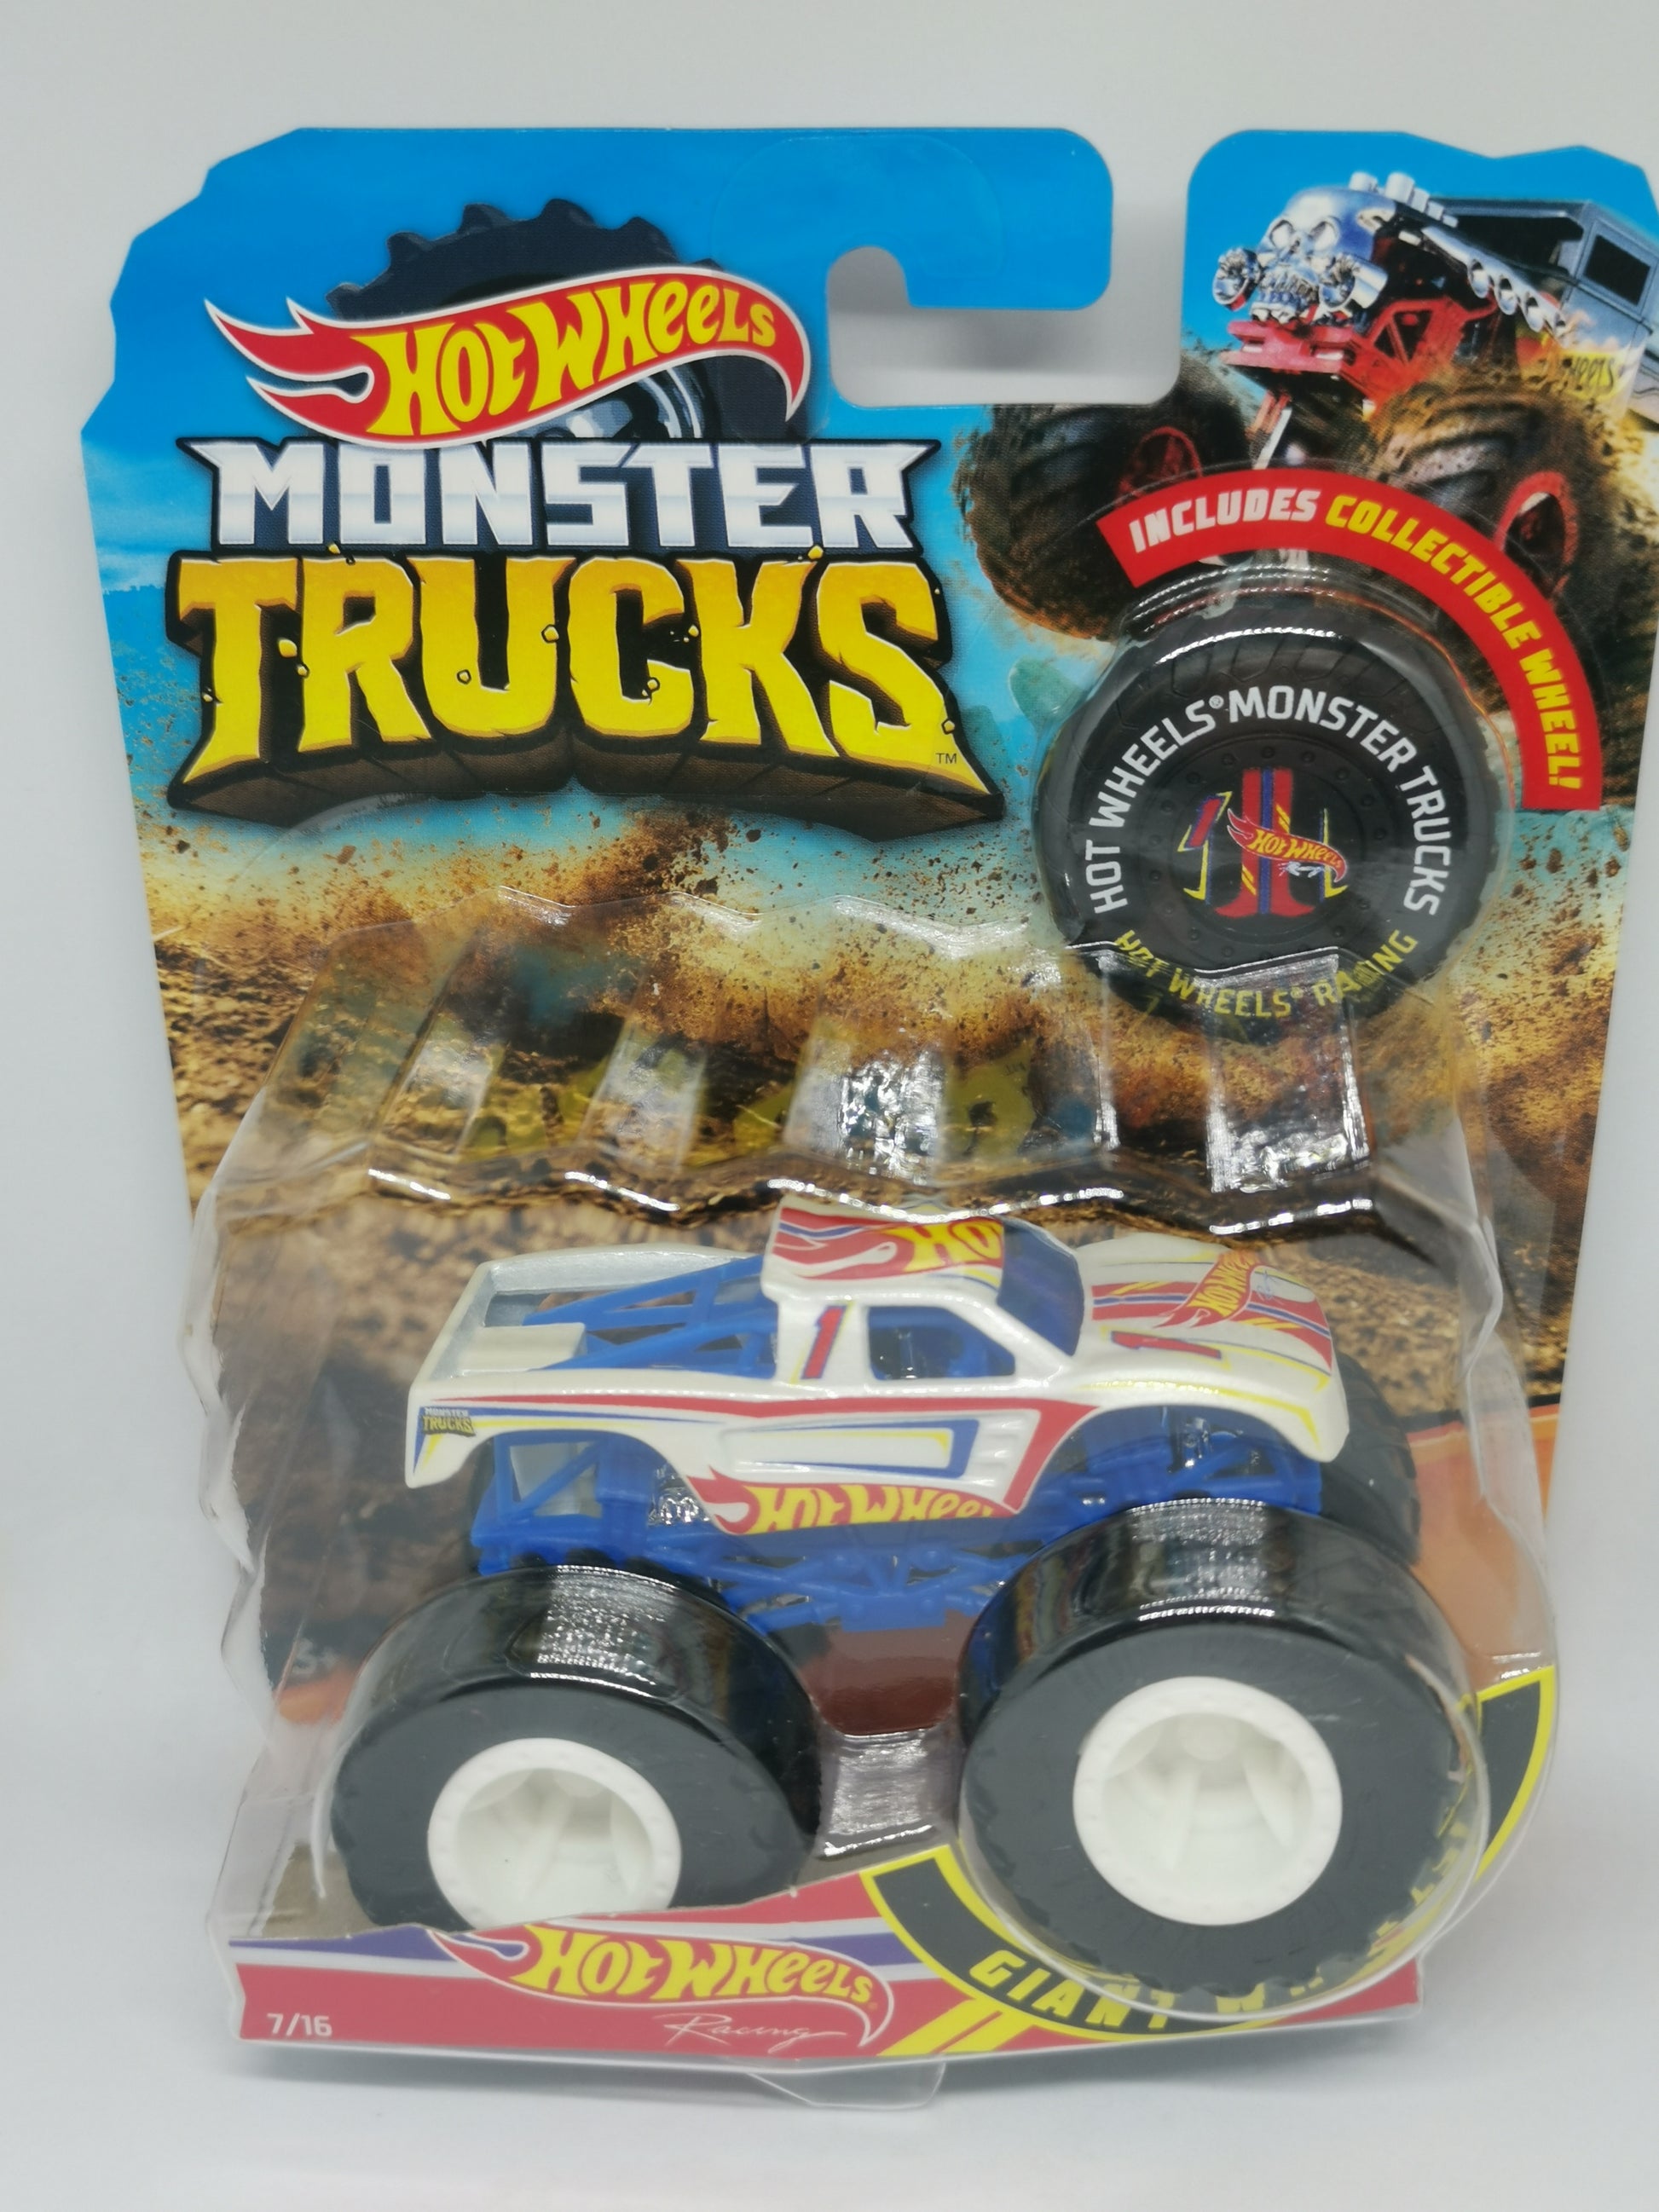 Hot Wheels: Race Cars vs. Monster Trucks